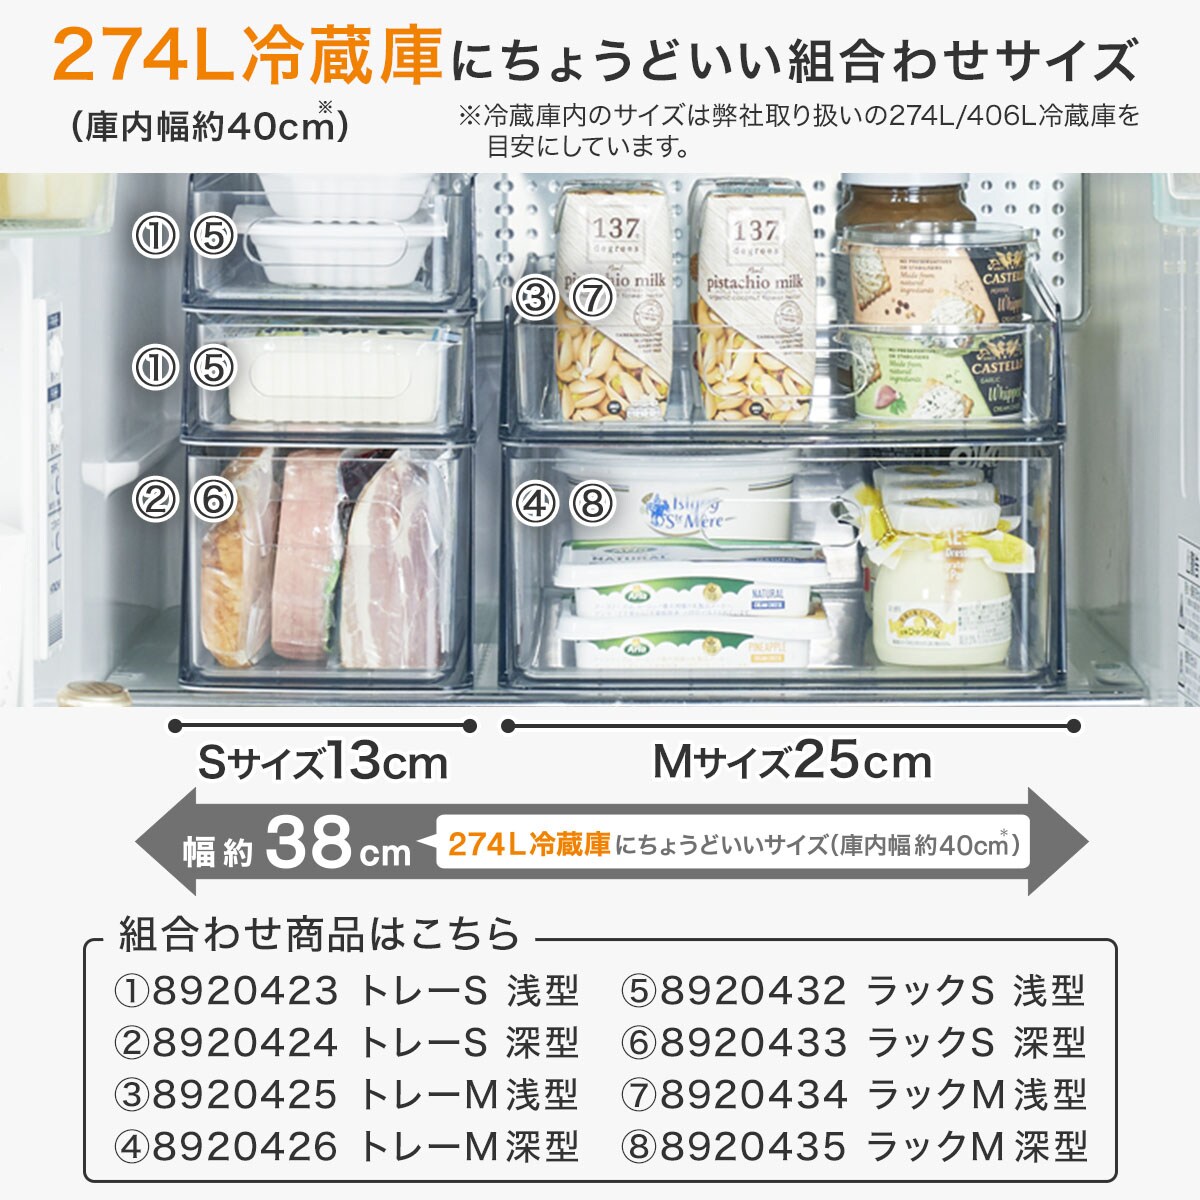 冷蔵庫ラック(深型 M 幅24cm) ニトリ